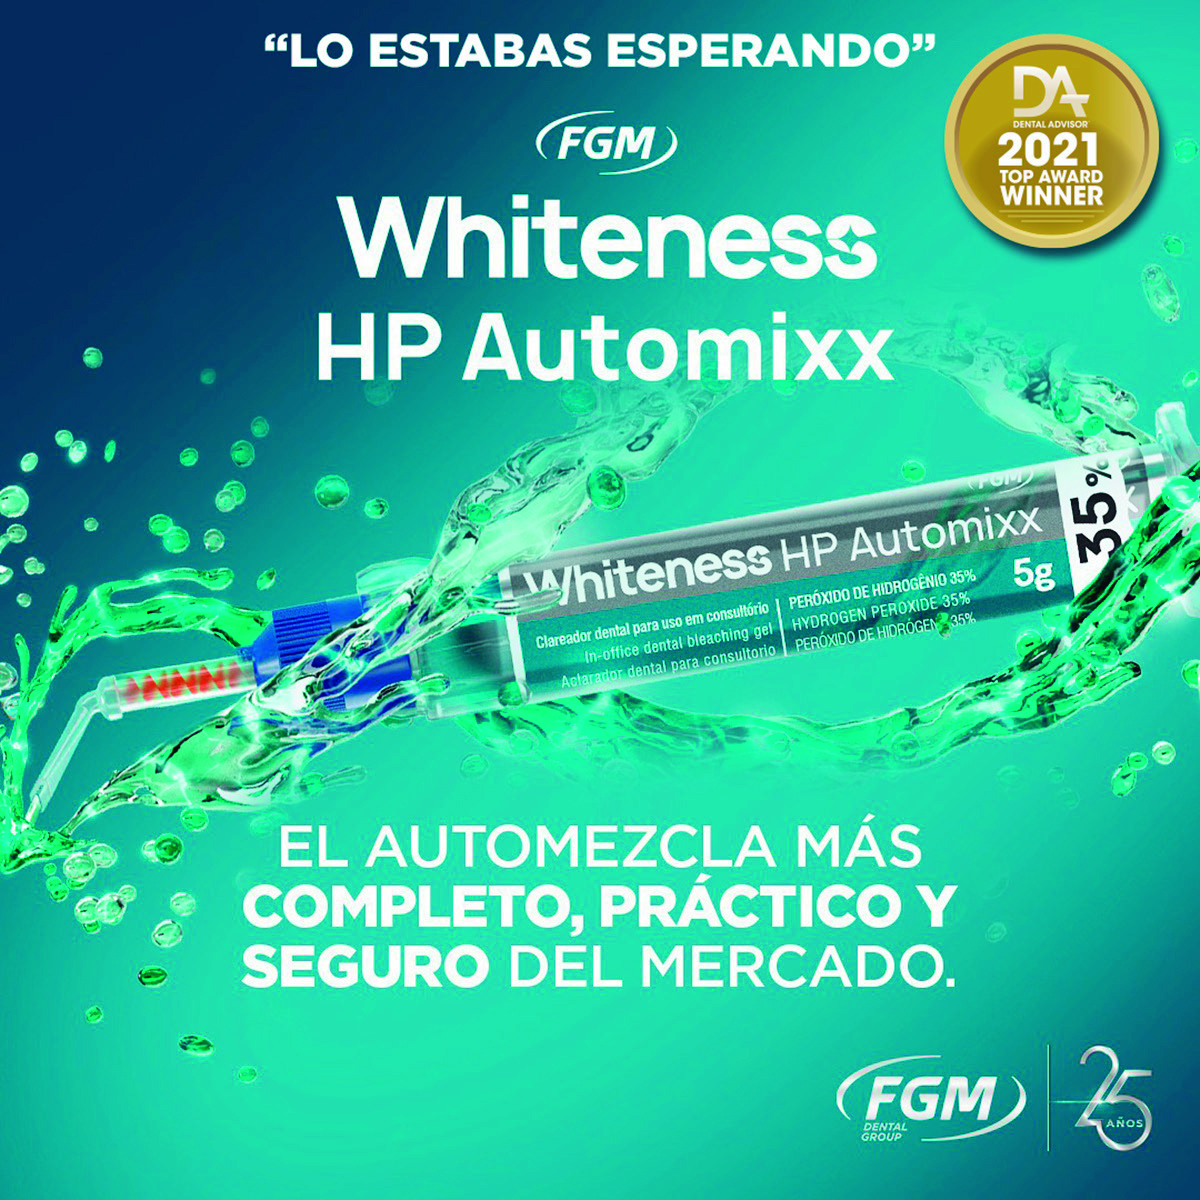 Blanqueamiento dental whiteness HP AUTOMIXX 35%